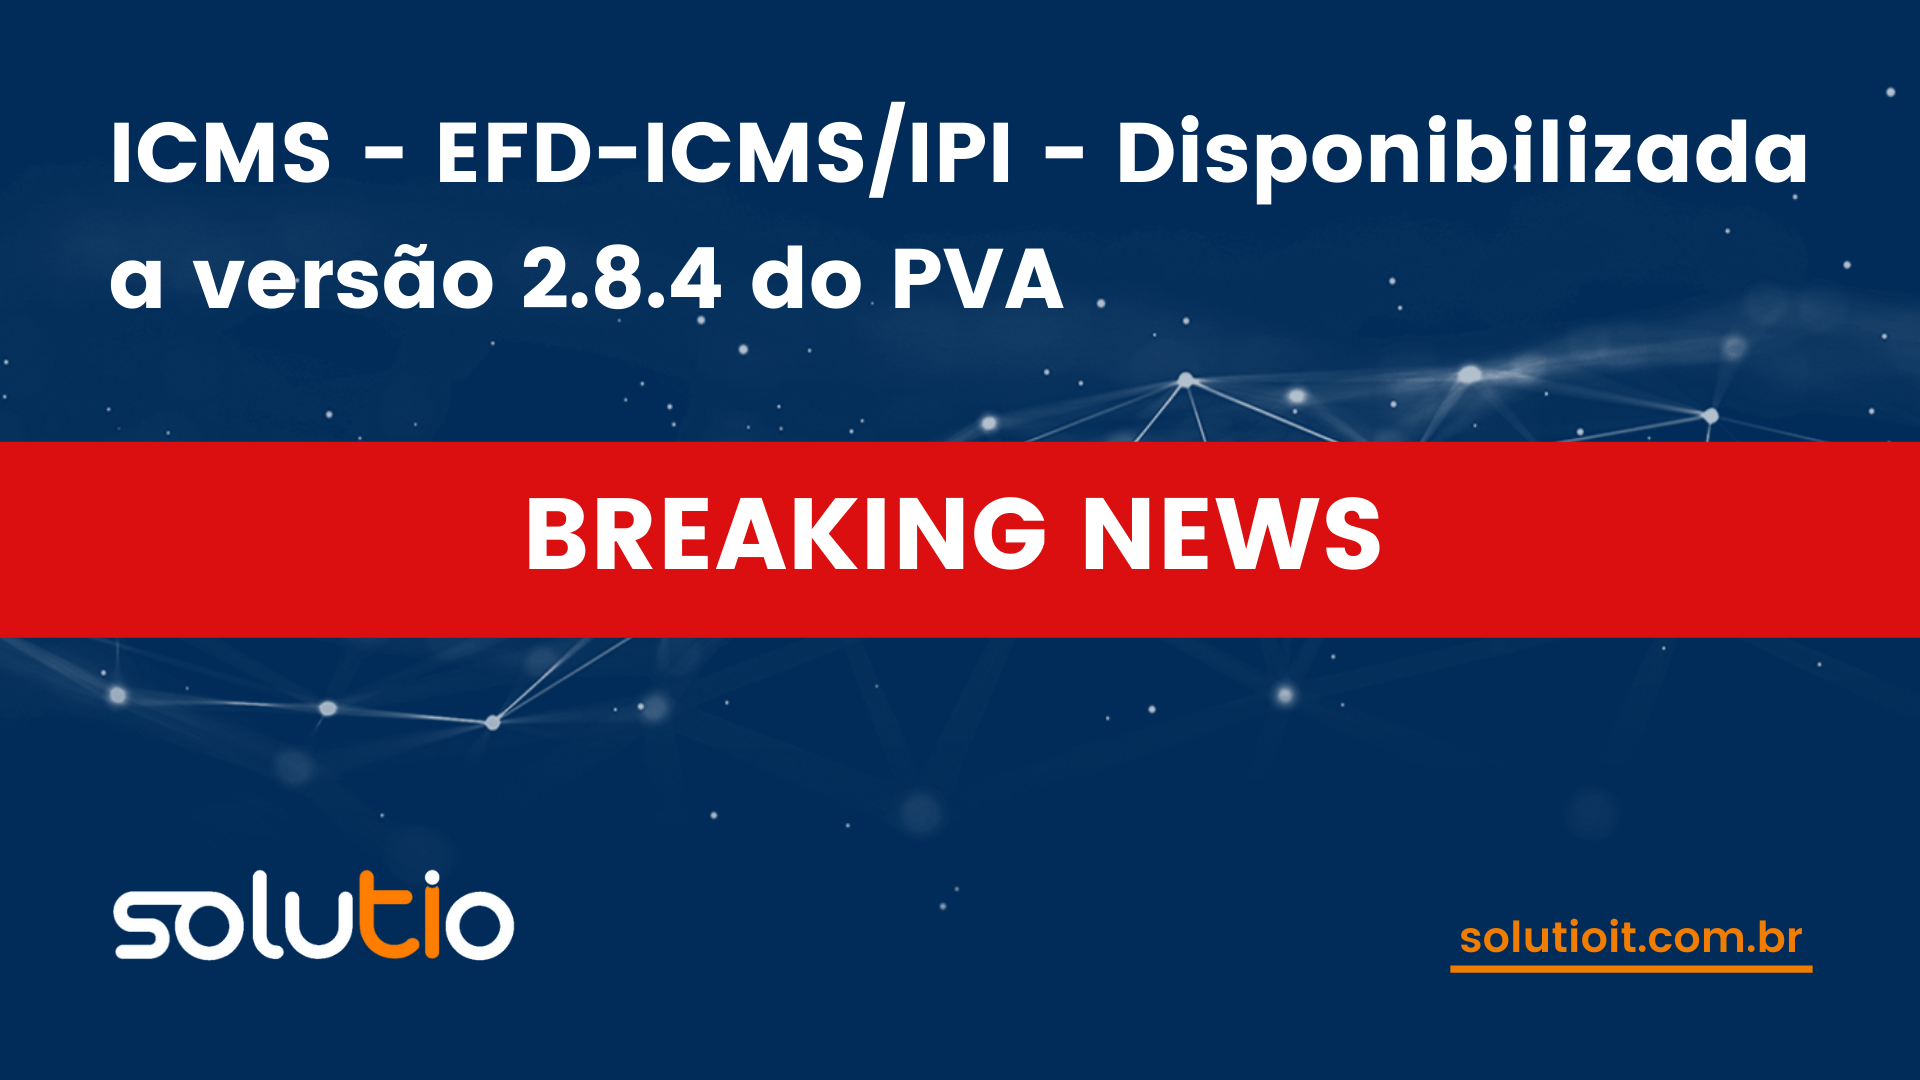 ICMS - EFD-ICMS/IPI - Disponibilizada a versão 2.8.4 do PVA